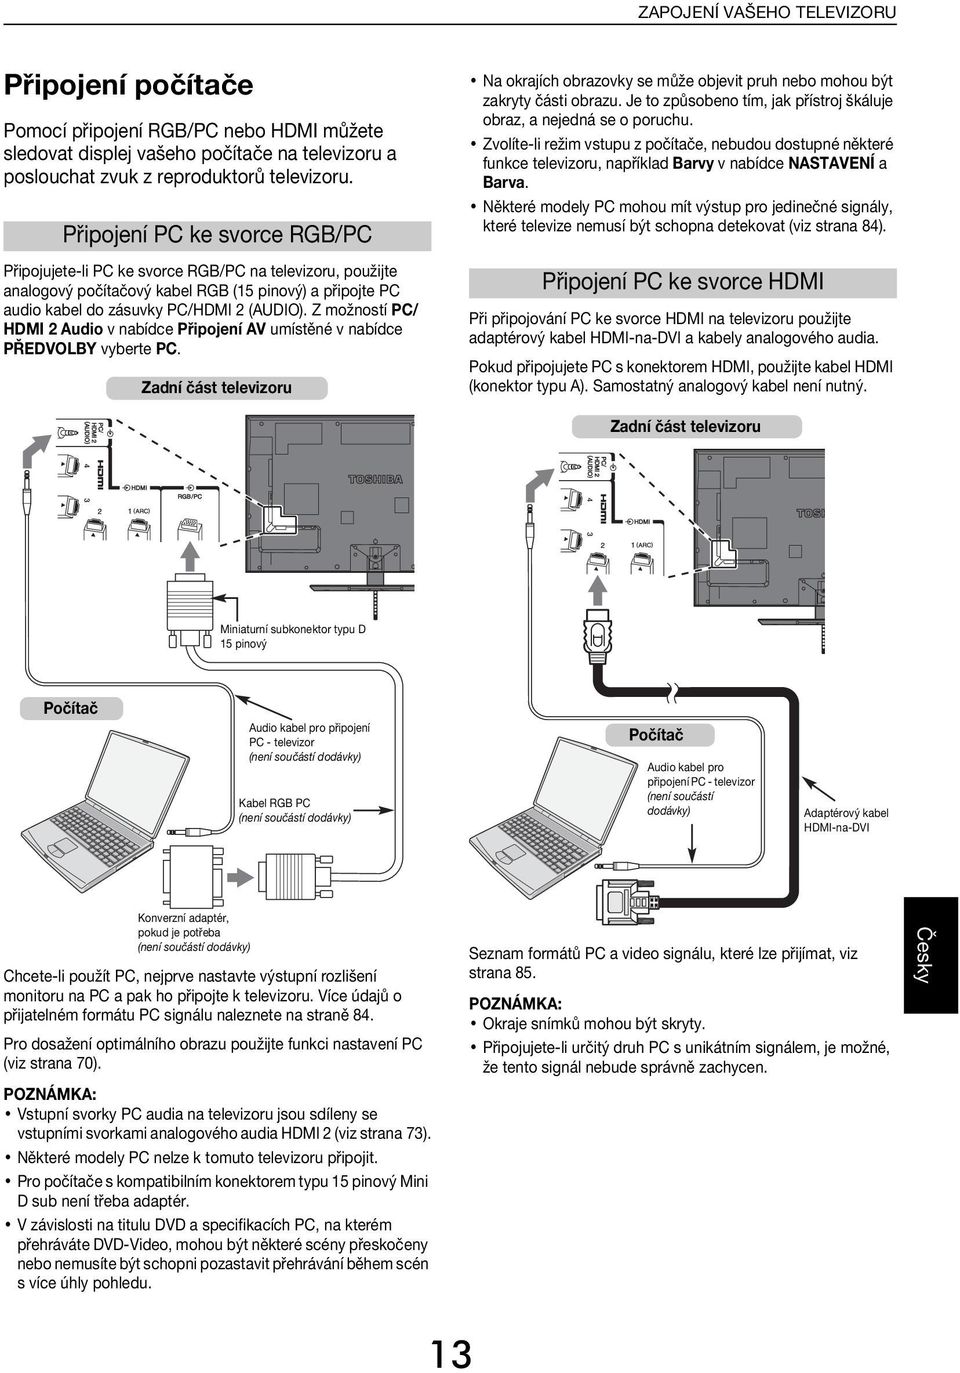 Z možností PC/ HDMI 2 Auio v níe Připojení AV umístěné v níe PŘEDVLBY vyerte PC. Zní část televizoru N okrjíh orzovky se může ojevit pruh neo mohou ýt zkryty části orzu.